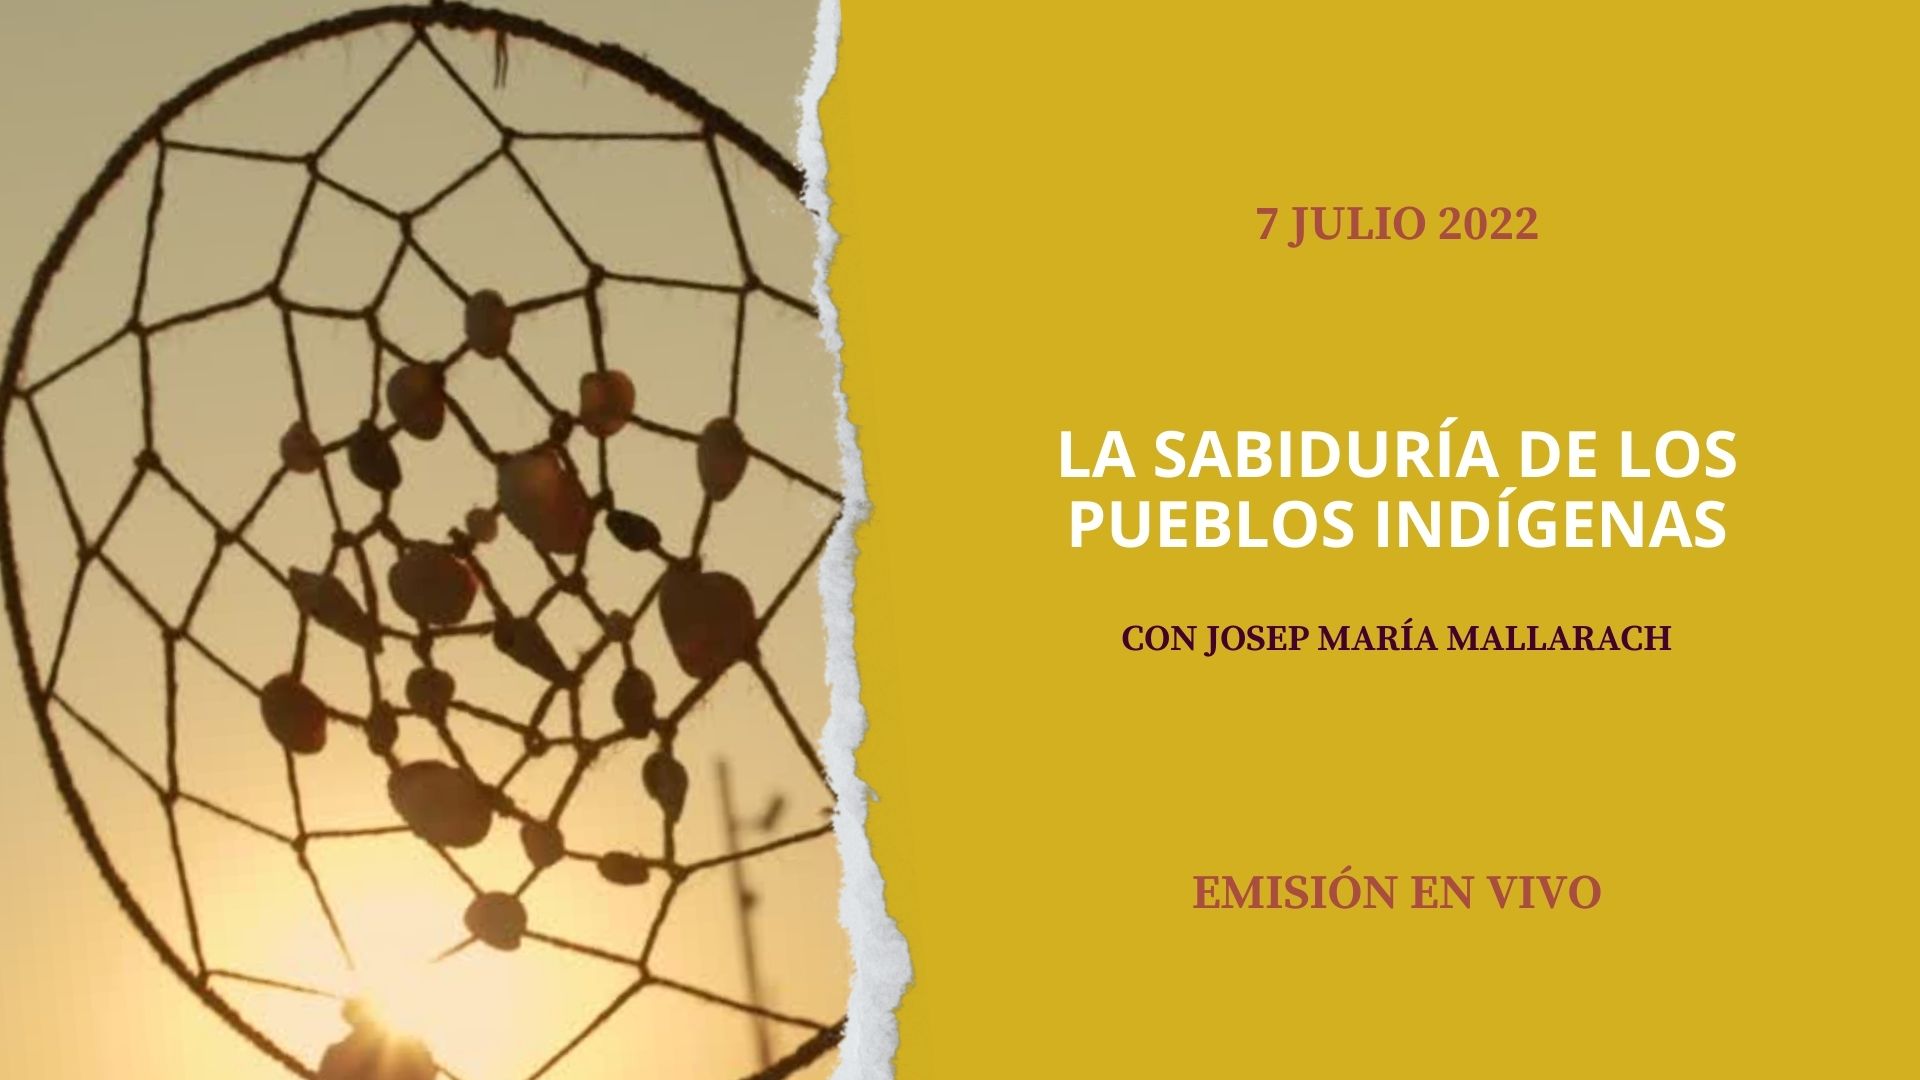 7 Julio 2022

La sabiduría de los pueblos indígenas

Josep María Mallarach

Emisión en Vivo